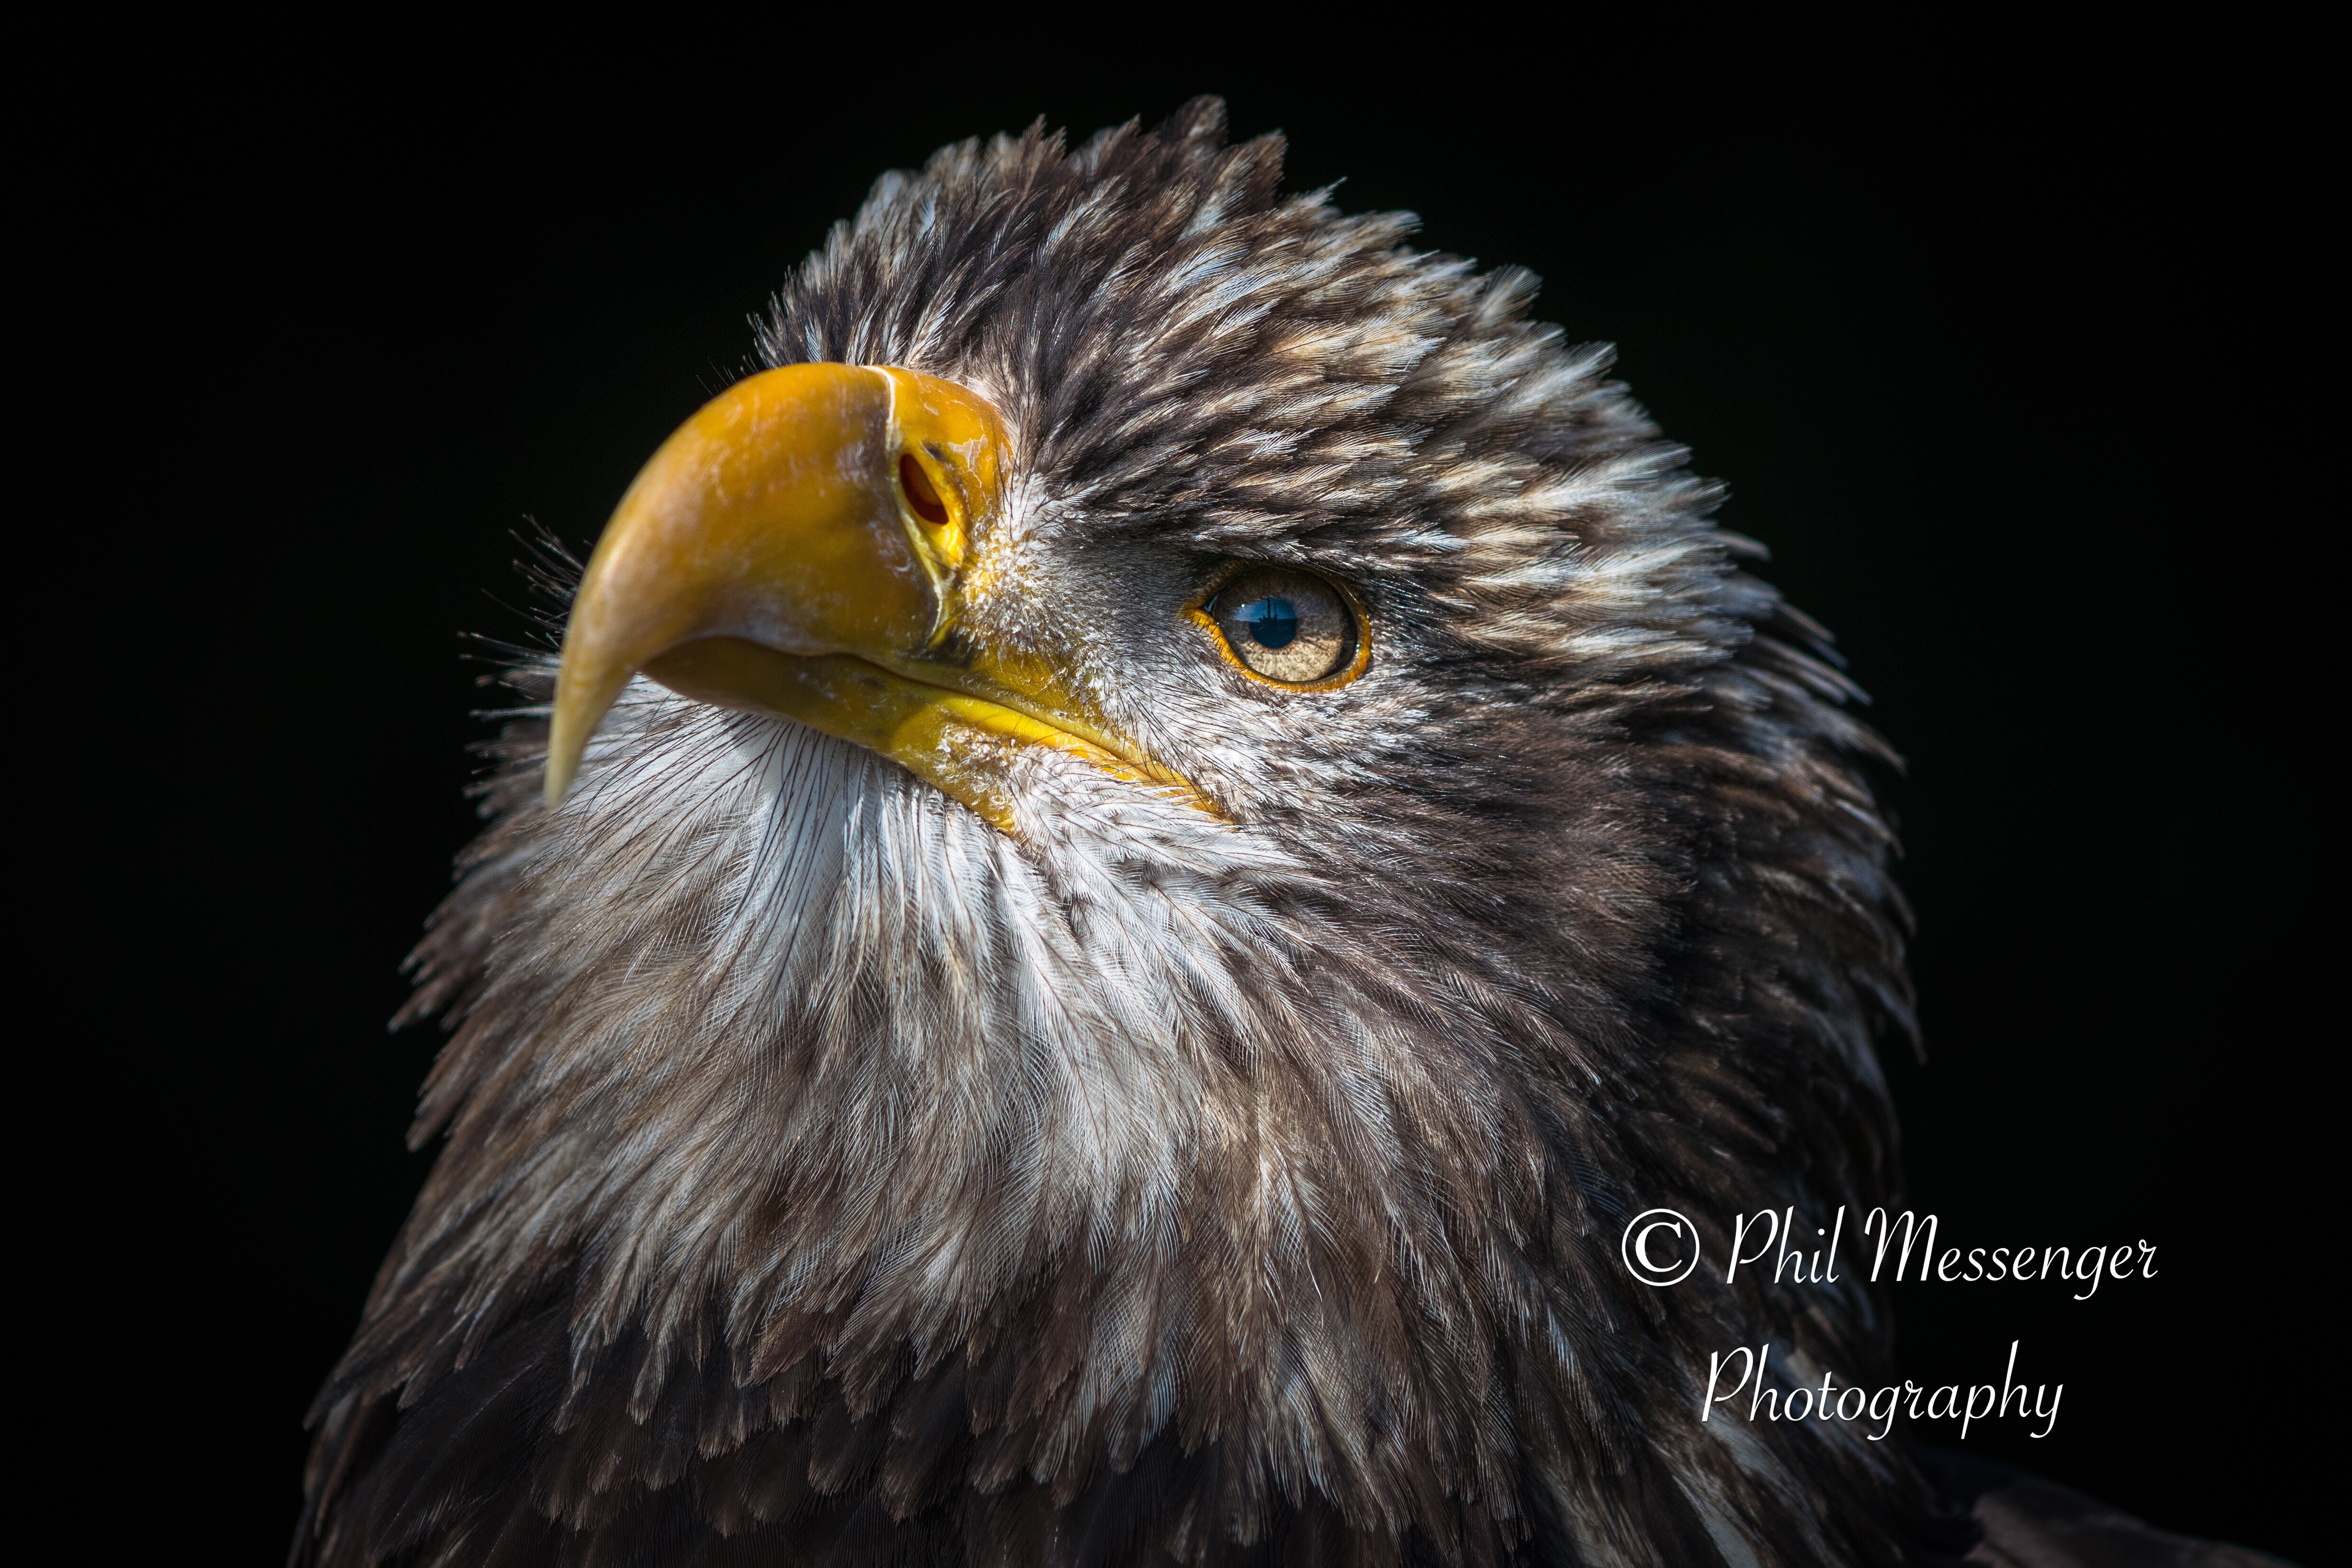 Eagle portrait taken at Millets Farm, Oxfordshire 